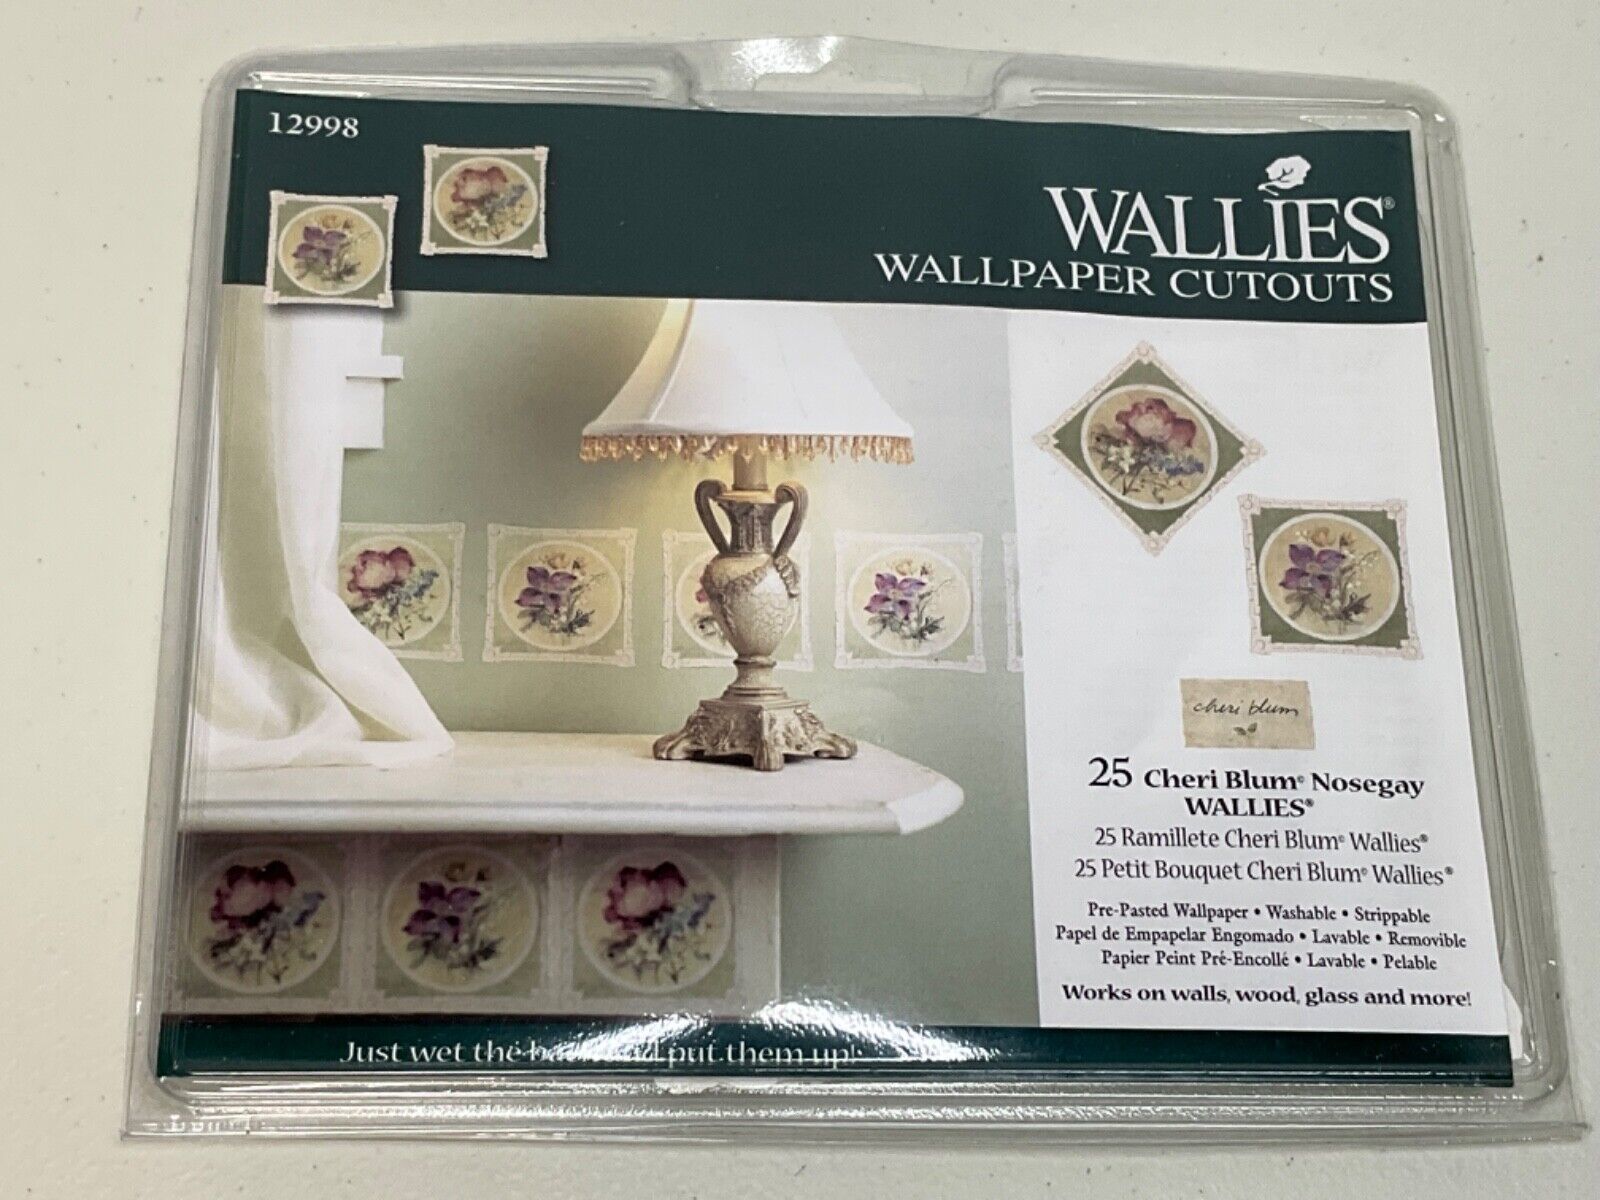 New Wallies Wallpaper Cutouts 25 Cheri Blum Nosegay Wallies - 2 Floral Designs - $14.60